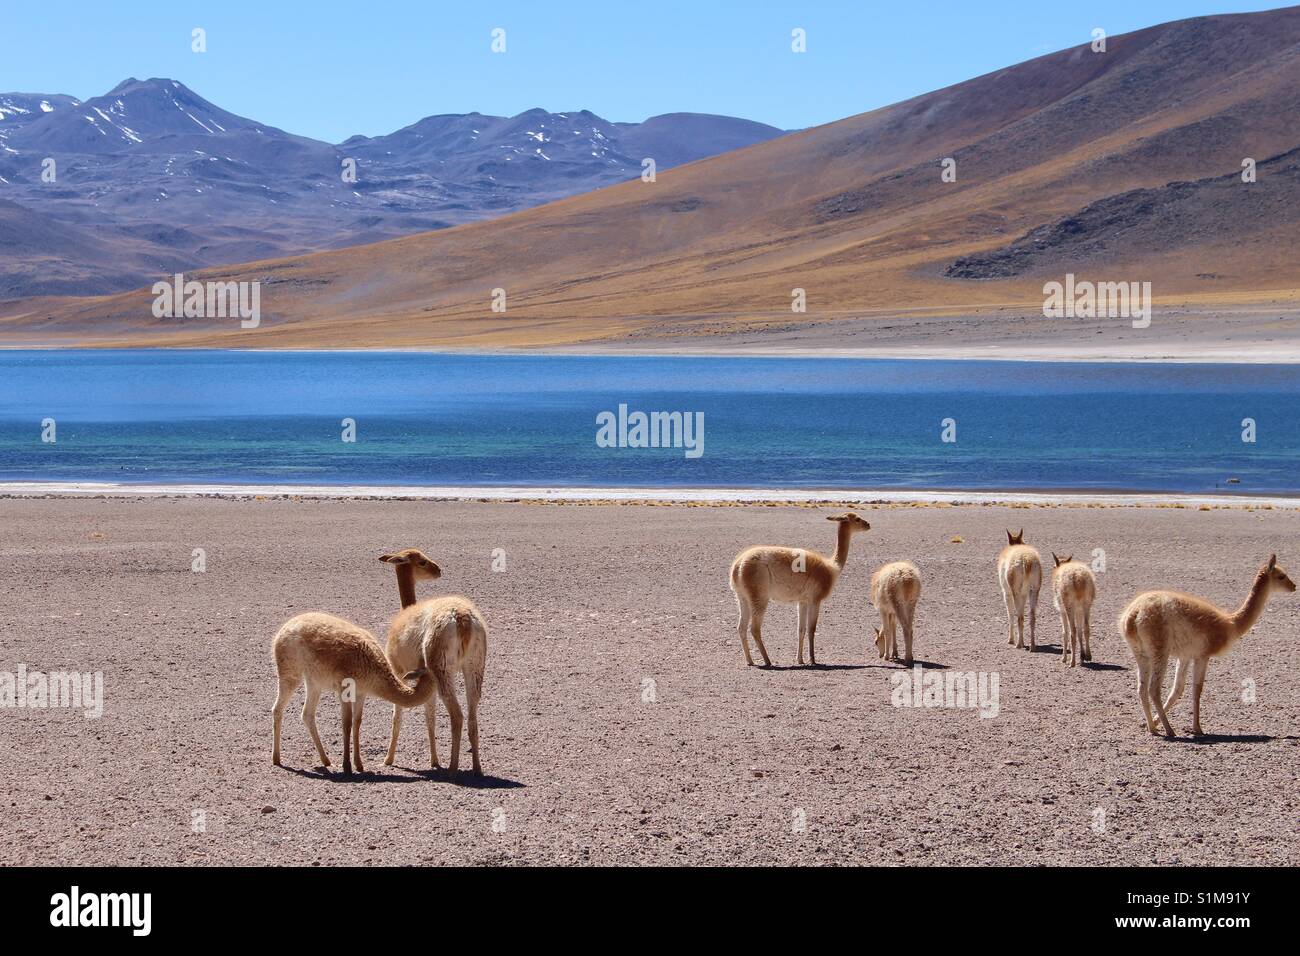 Desert of San Pedro de Atacama, Chile Stock Photo